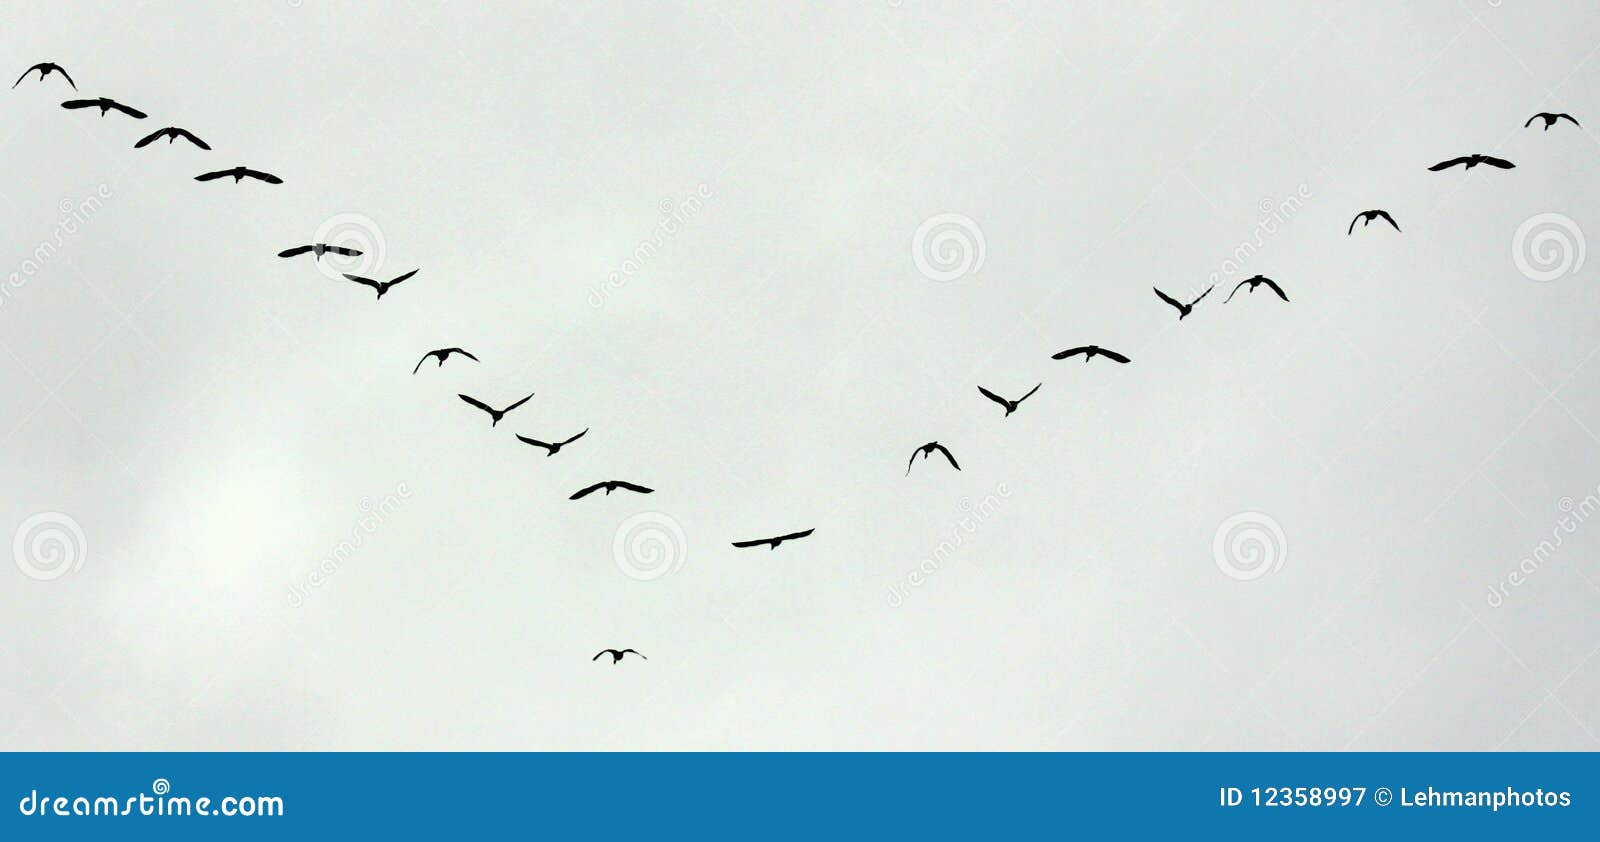 birds flight migration